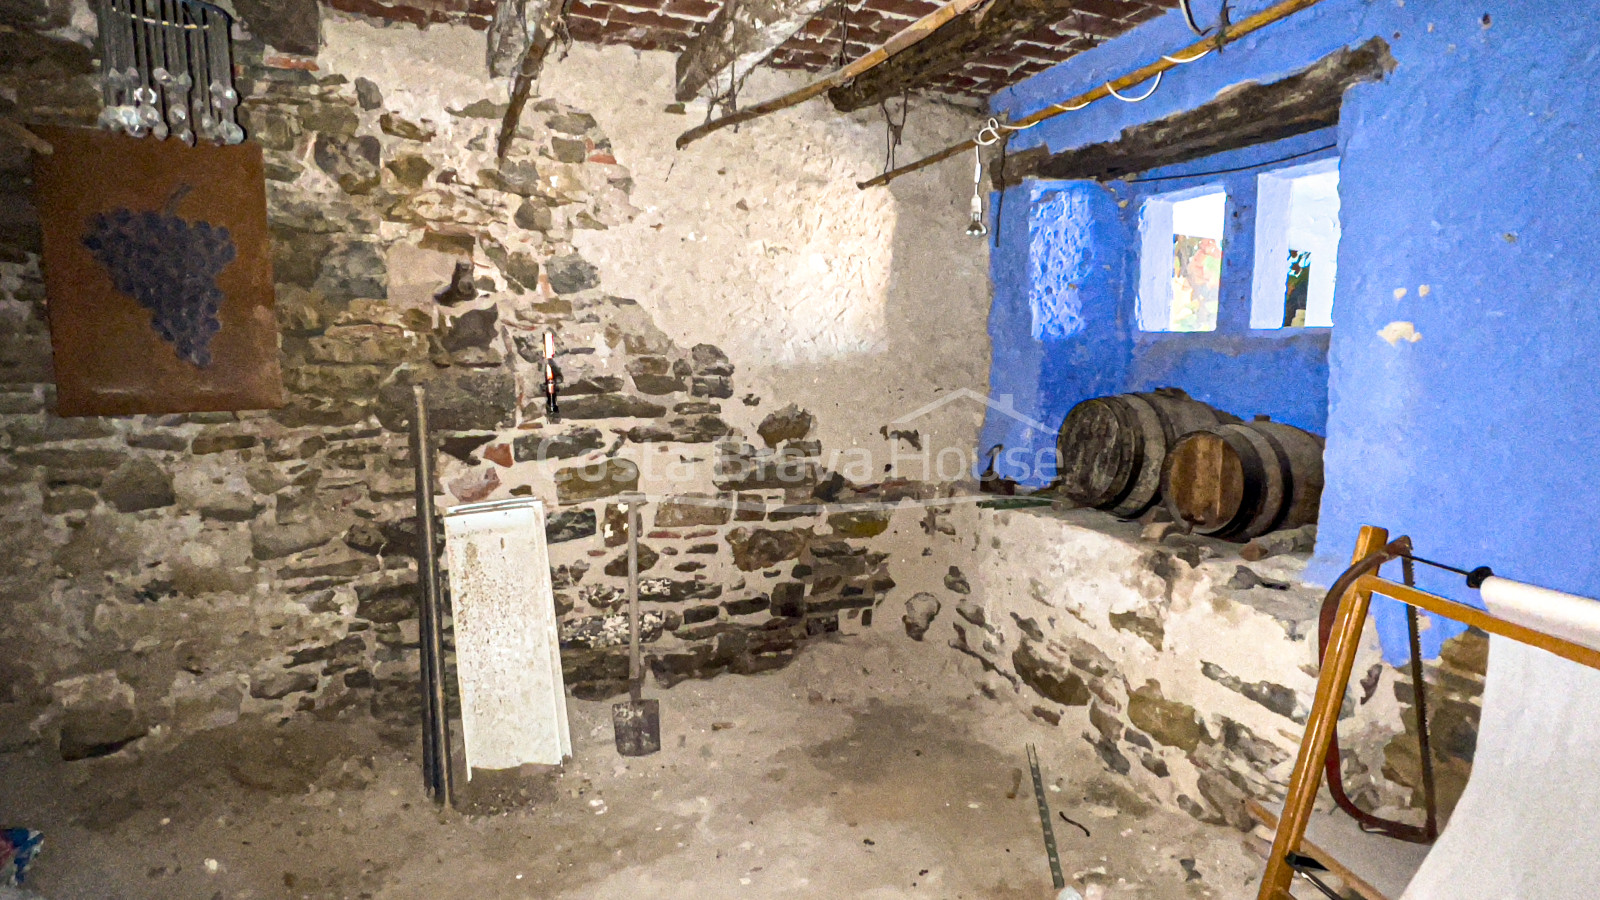 Maison en pierre à vendre à Gualta, avec cour et nombreuses possibilités de transformation